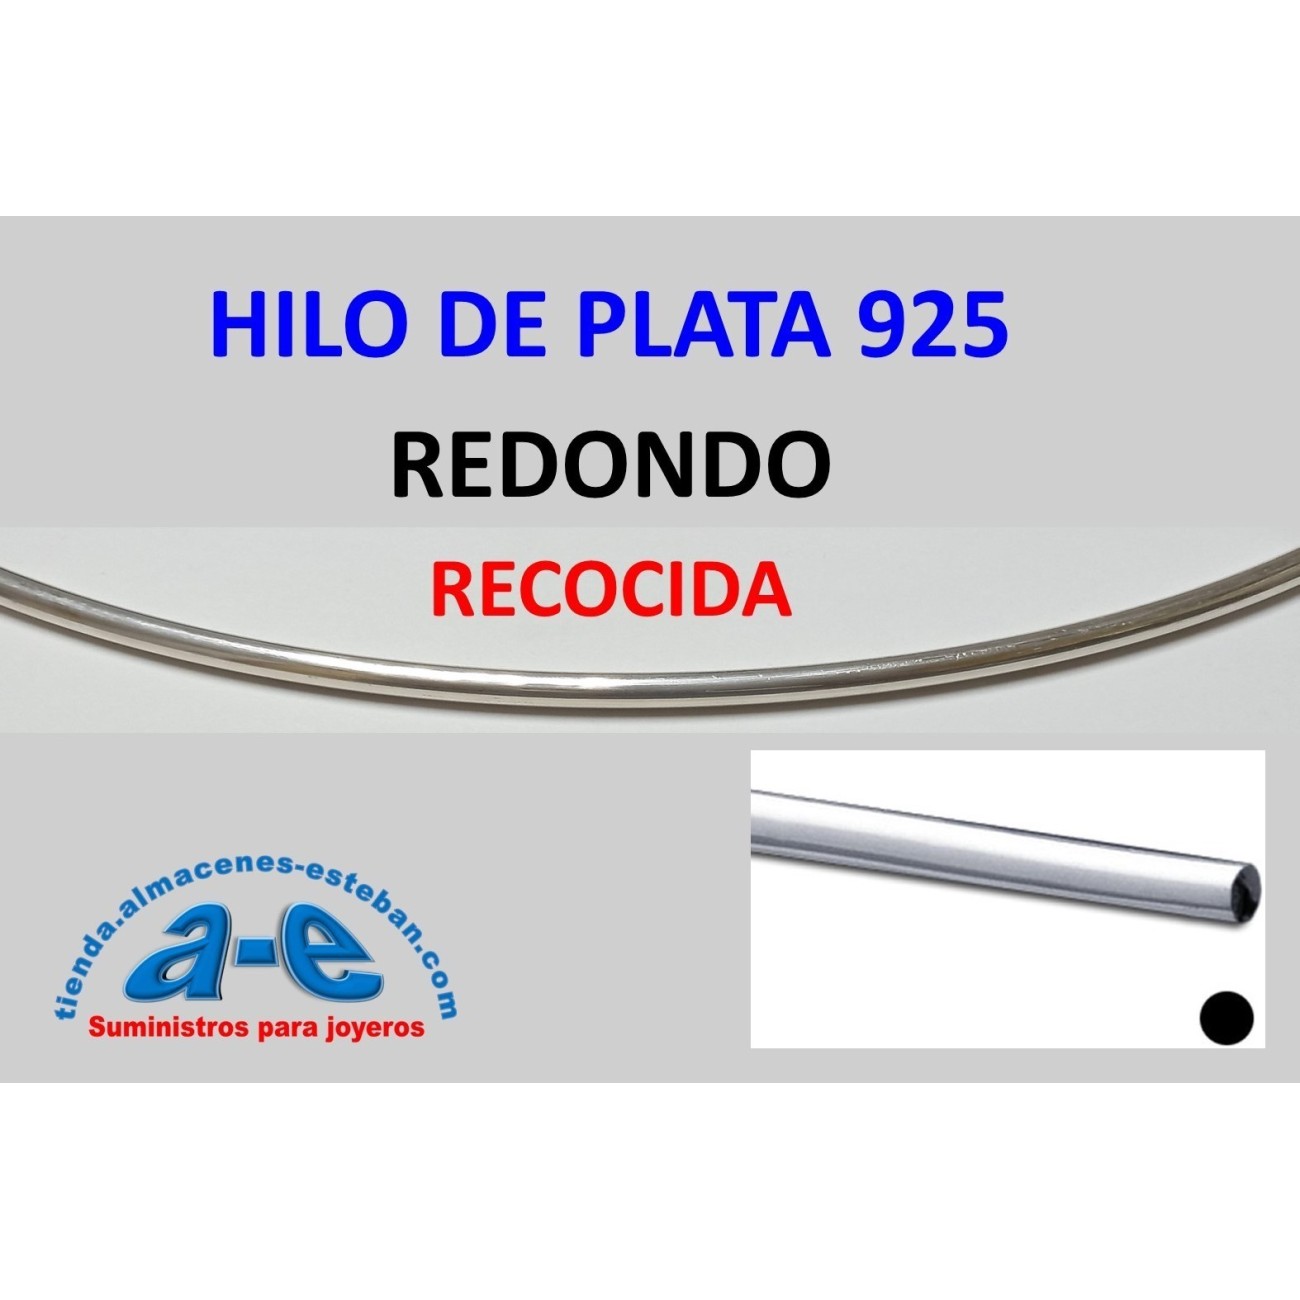 HILO PLATA 925 REDONDO 1,10MM-R RECOCIDA (1 m)